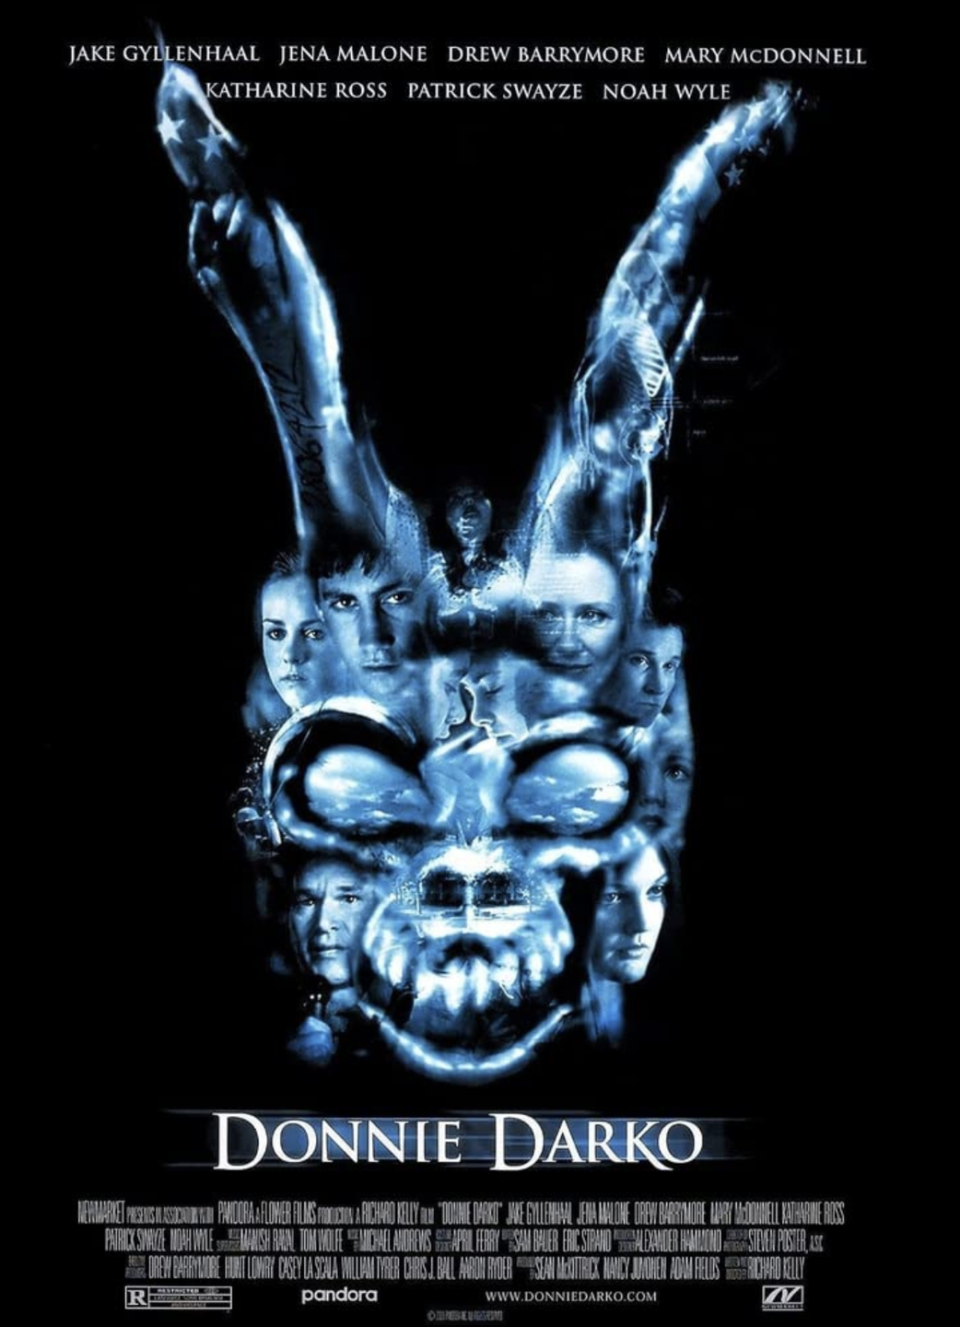 2) Donnie Darko